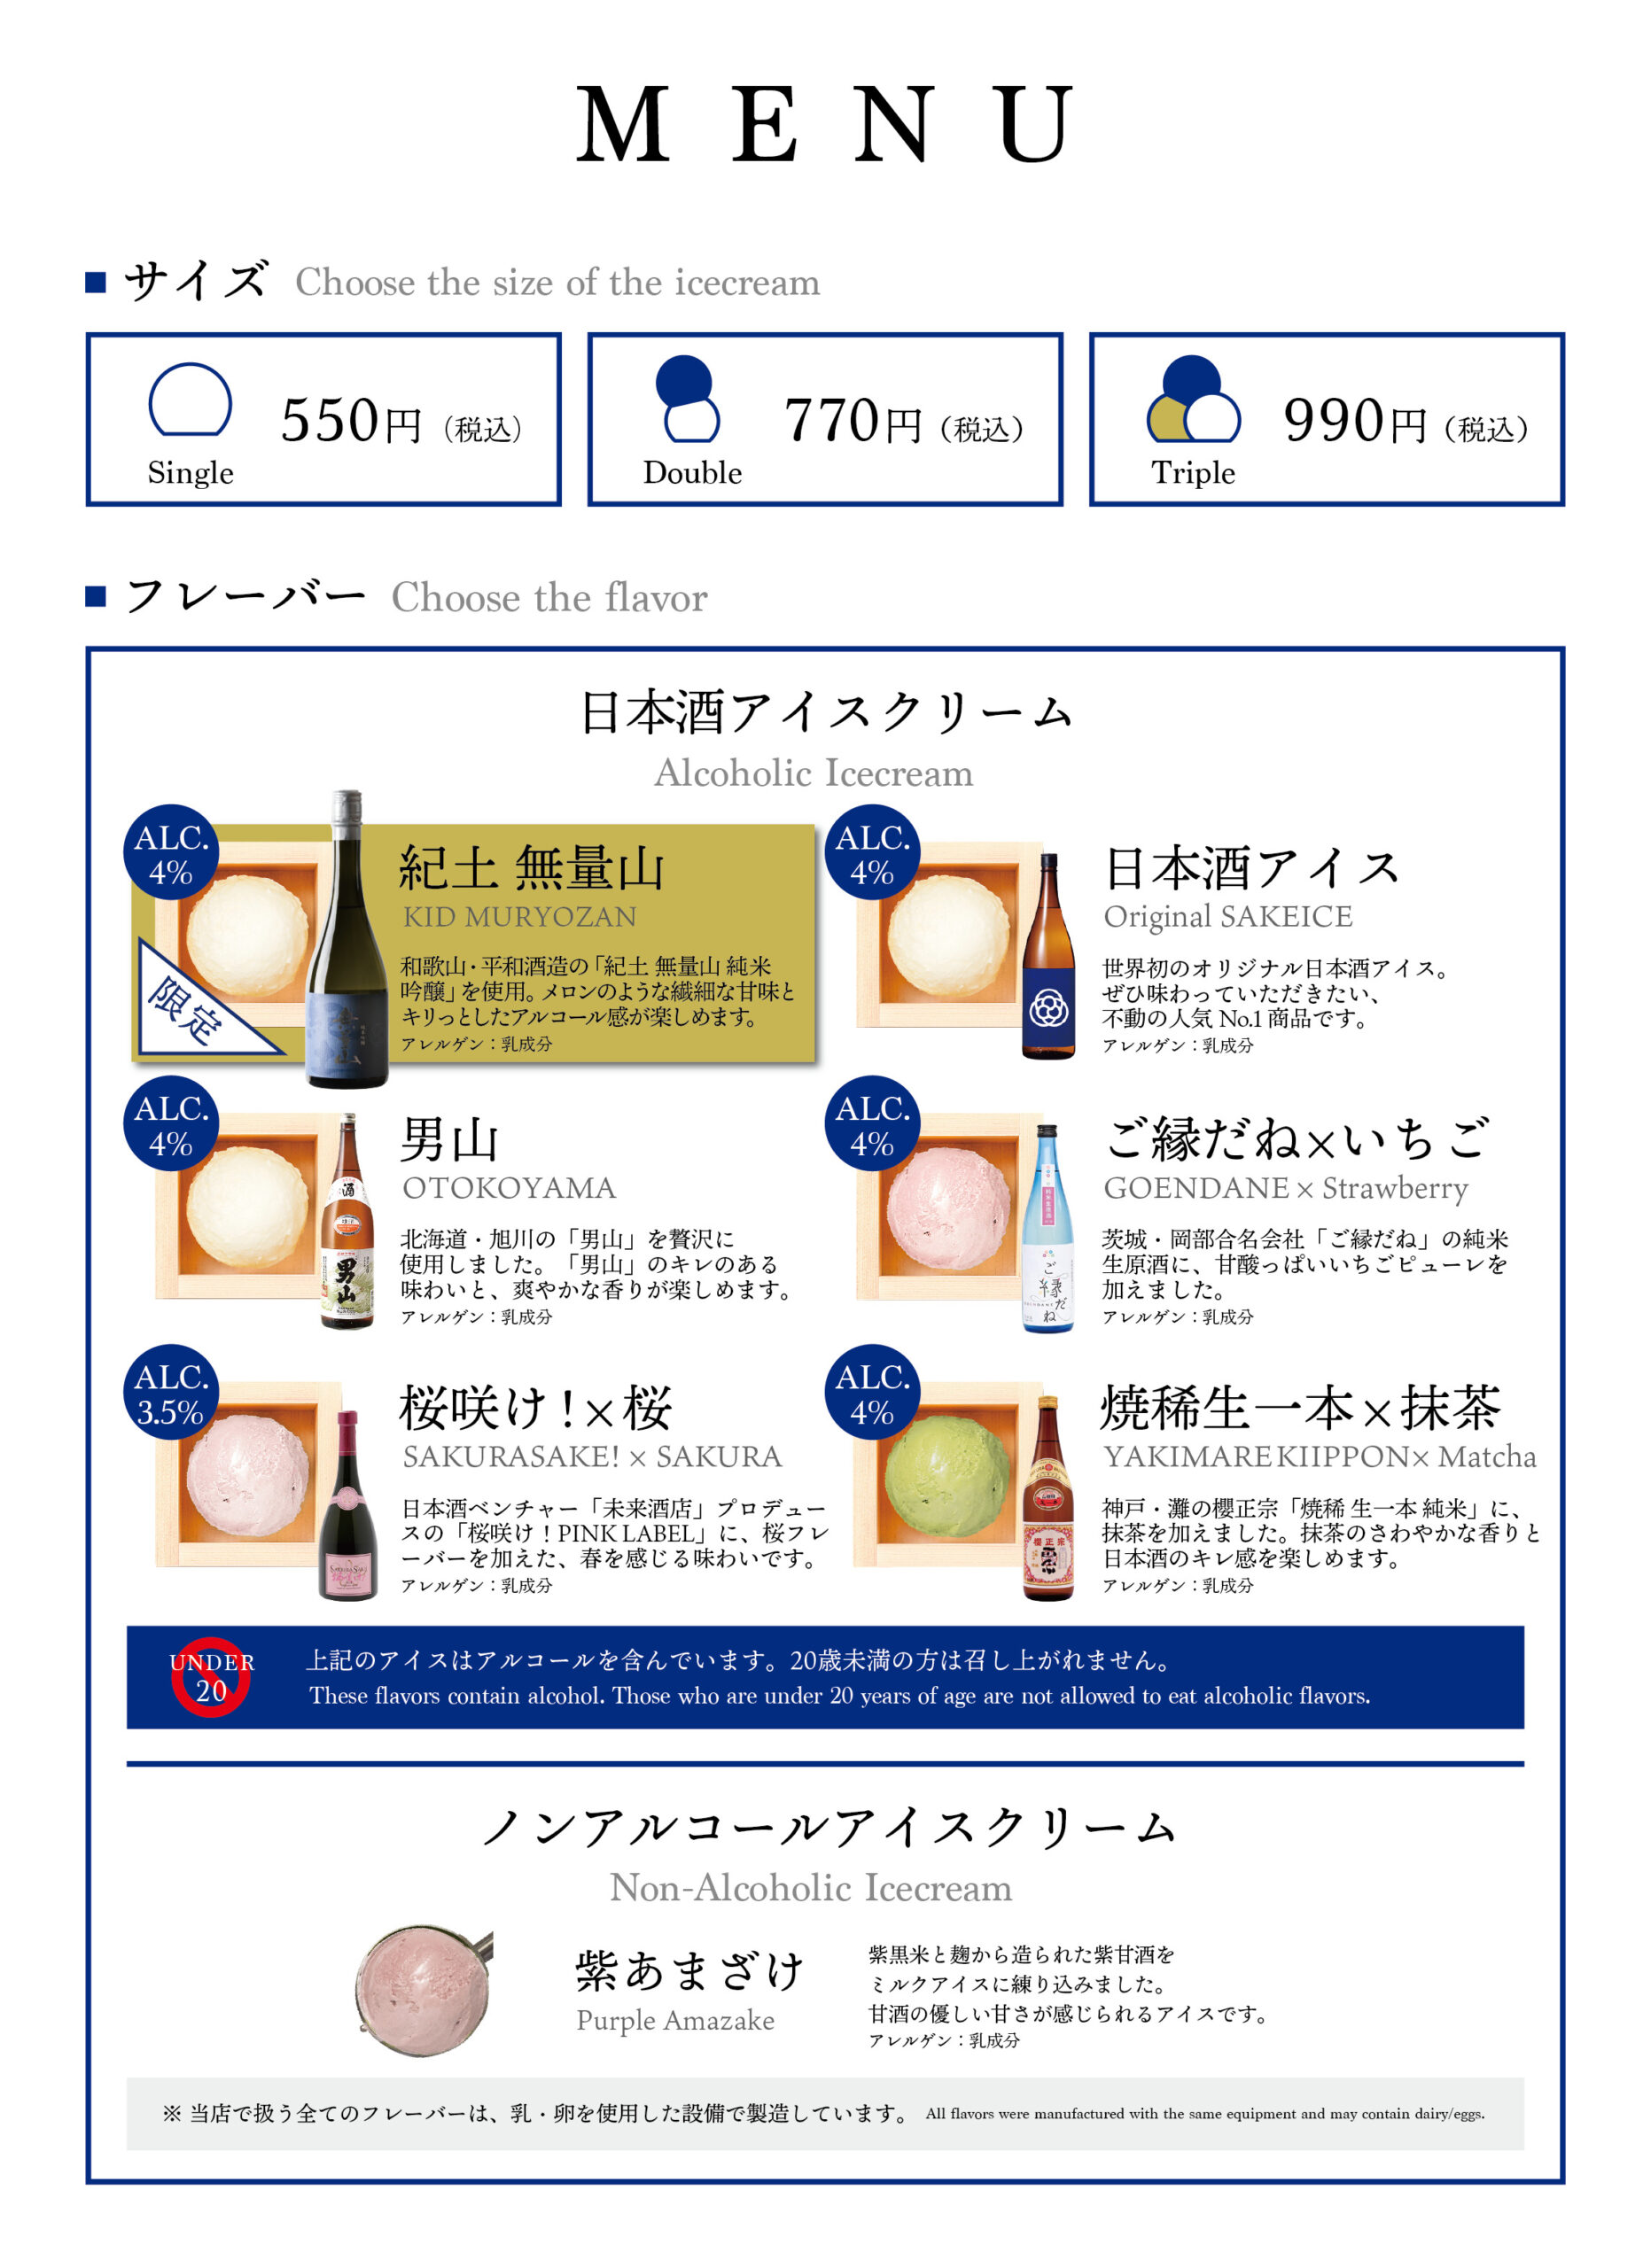 【関西初出店】日本酒アイスクリーム専門店『SAKEICE（サケアイス）』が阪急うめだ本店でポップアップストアを2021年4月7日〜4月12日に限定OPEN